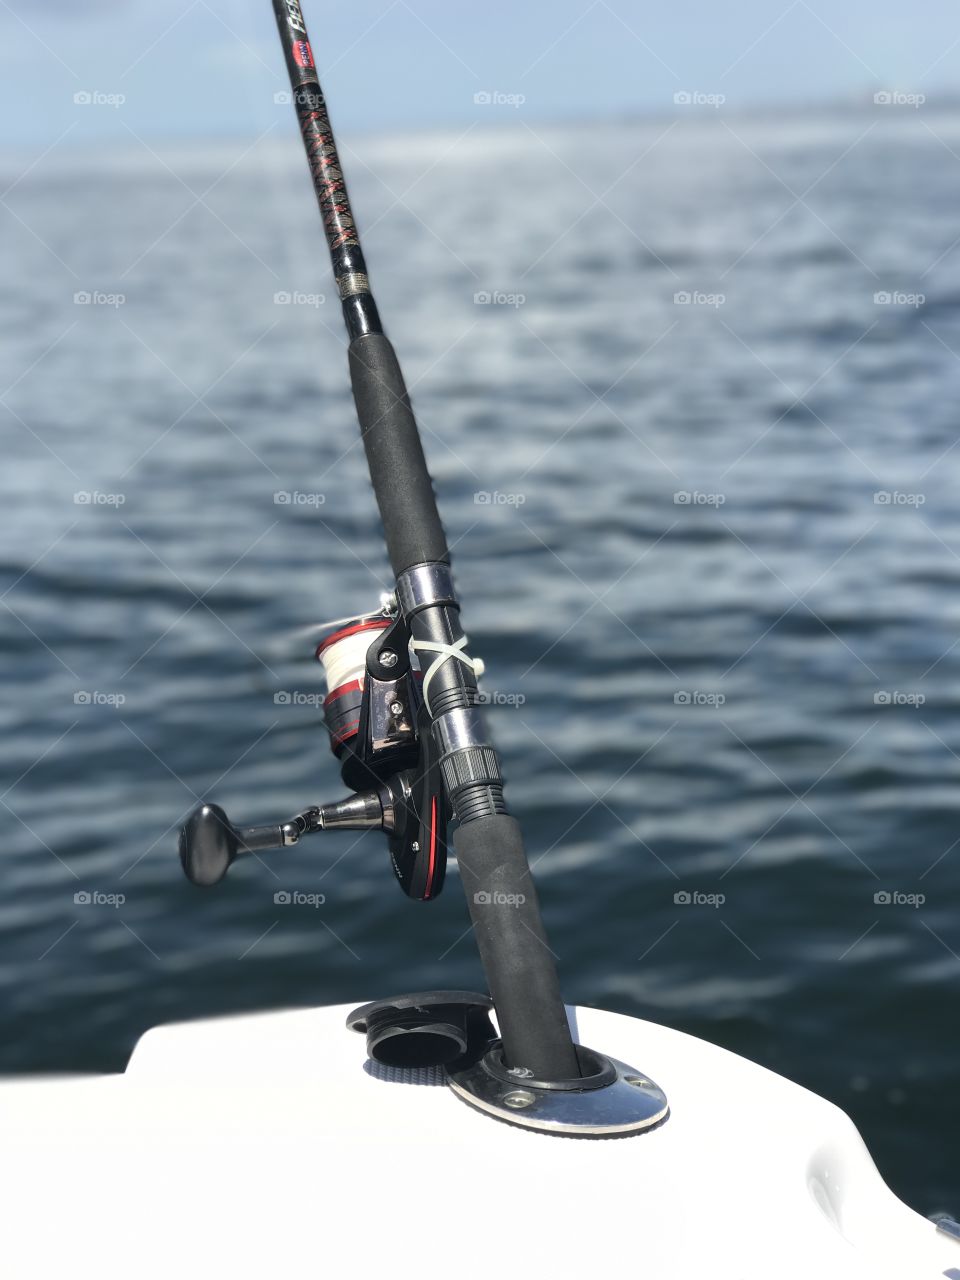 Fishing takes me away 